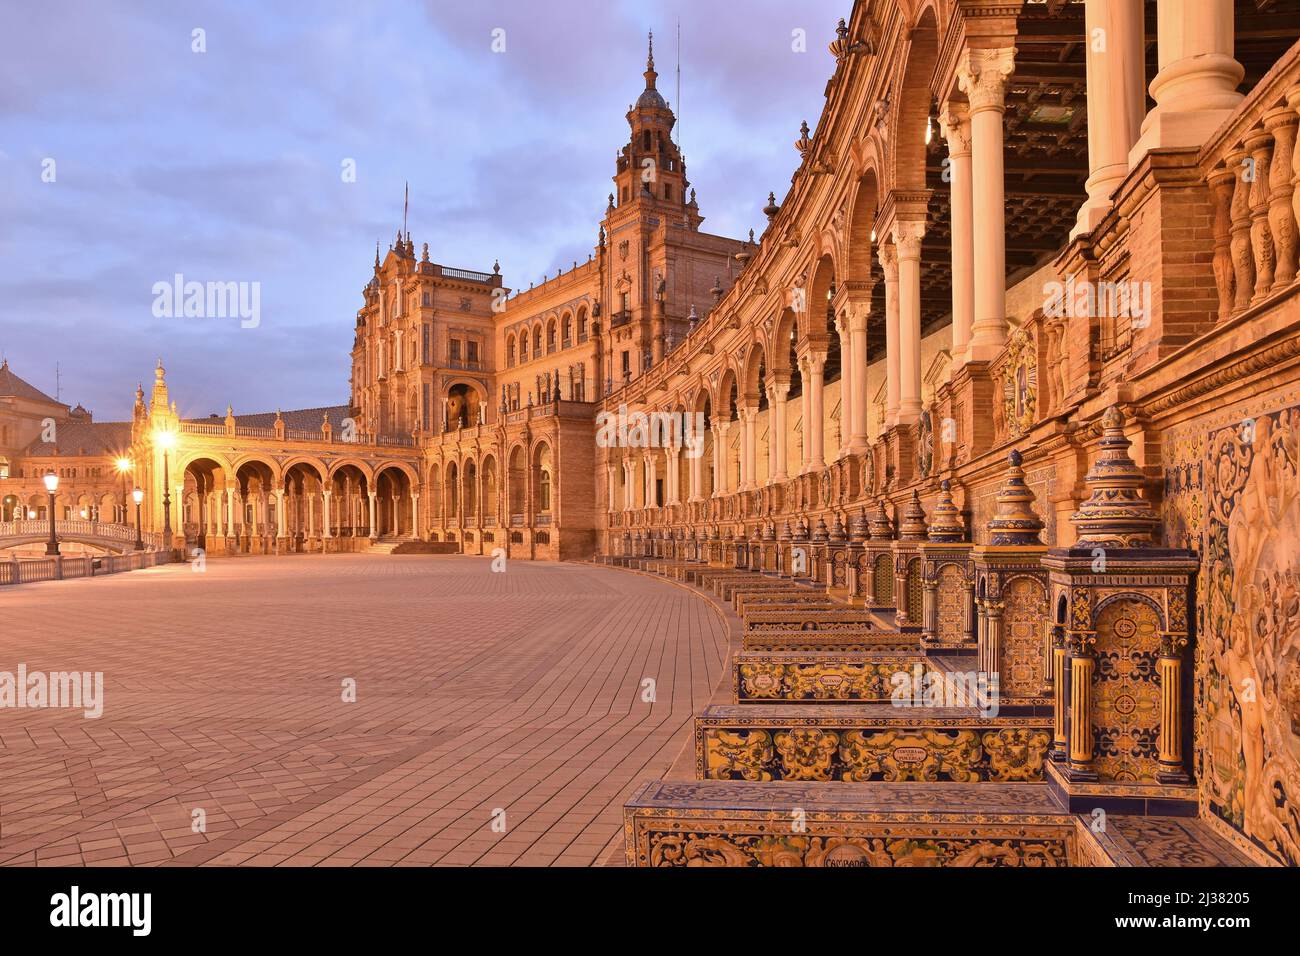 Plaza de Espana - Architecture baroque, Renaissance et mauresque de style révival à l'aube. Situé au Parc Maria Luisa à Séville Andalousie Espagne. Banque D'Images